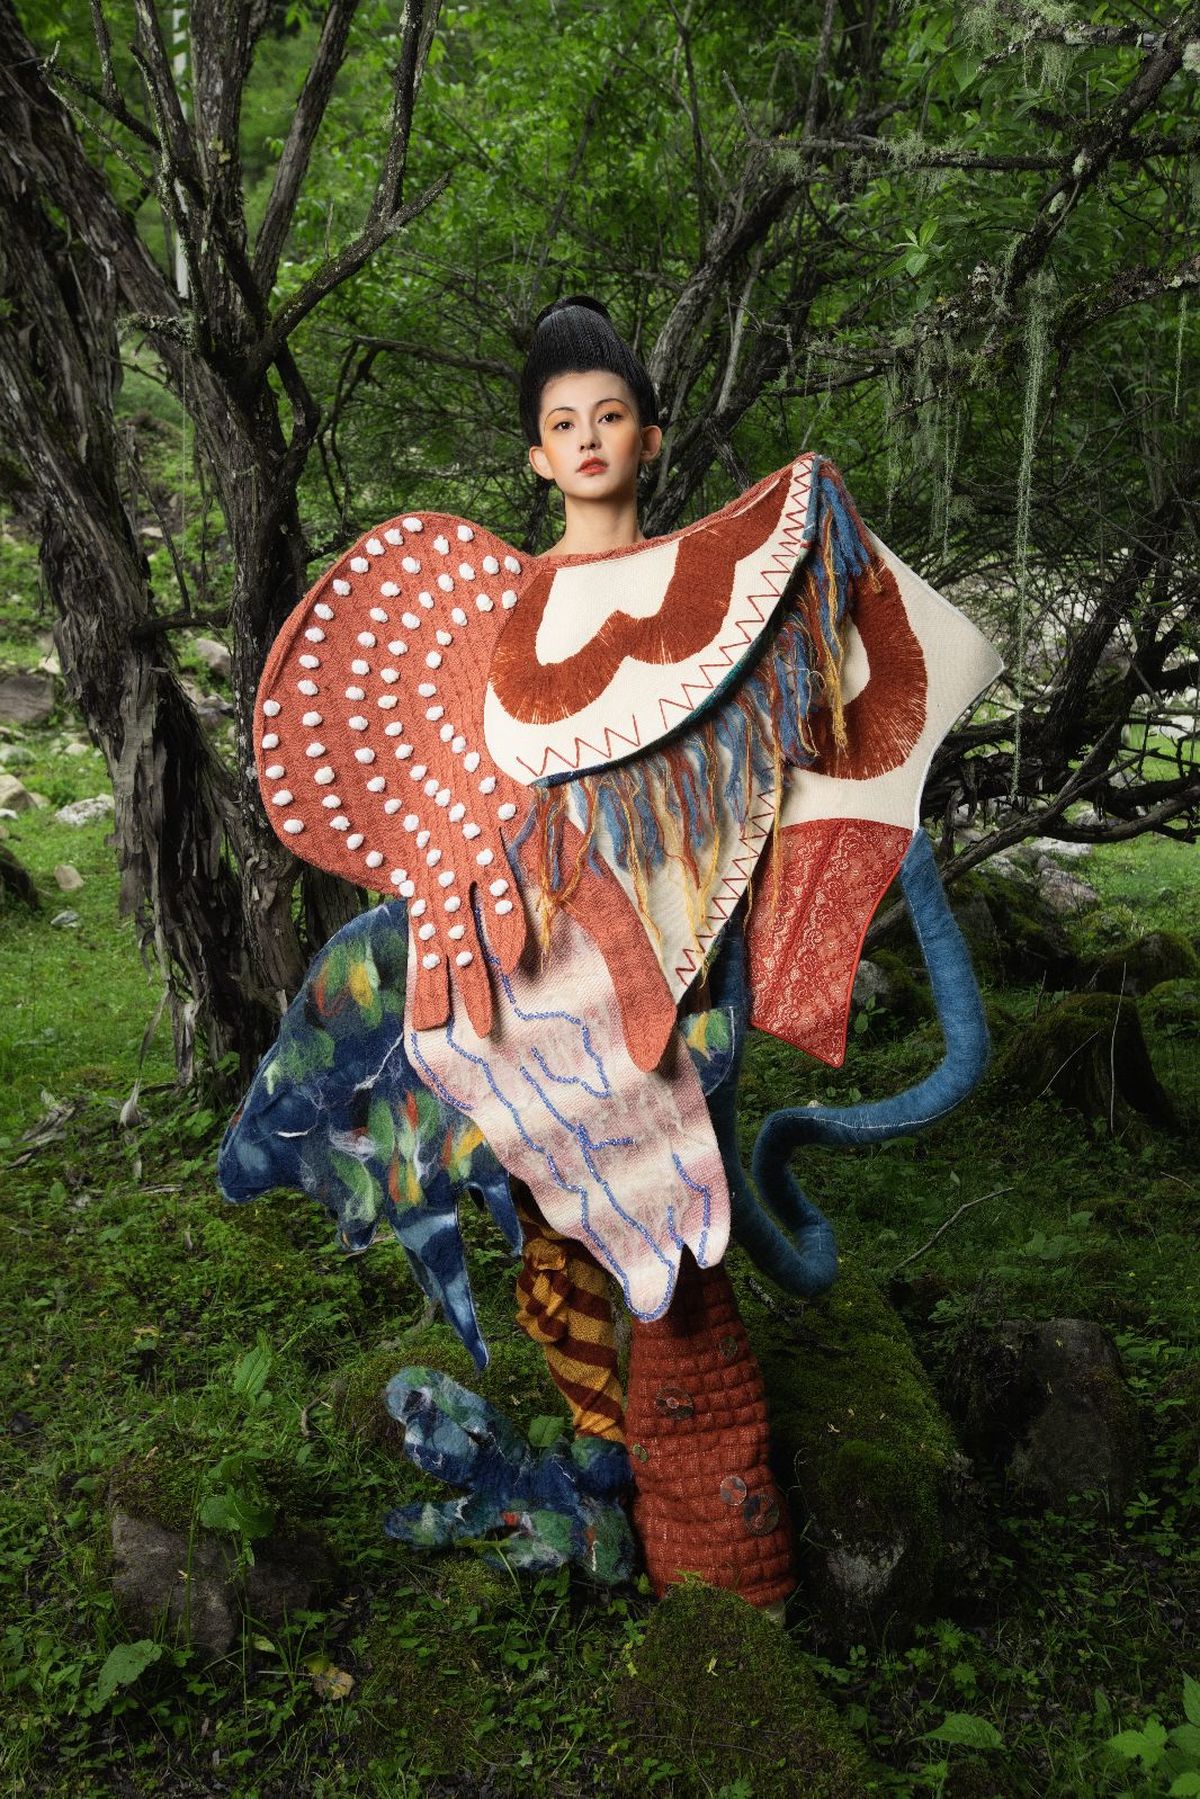 一位穿着艺术服装的女性在森林中与树木和一座雕像合影。